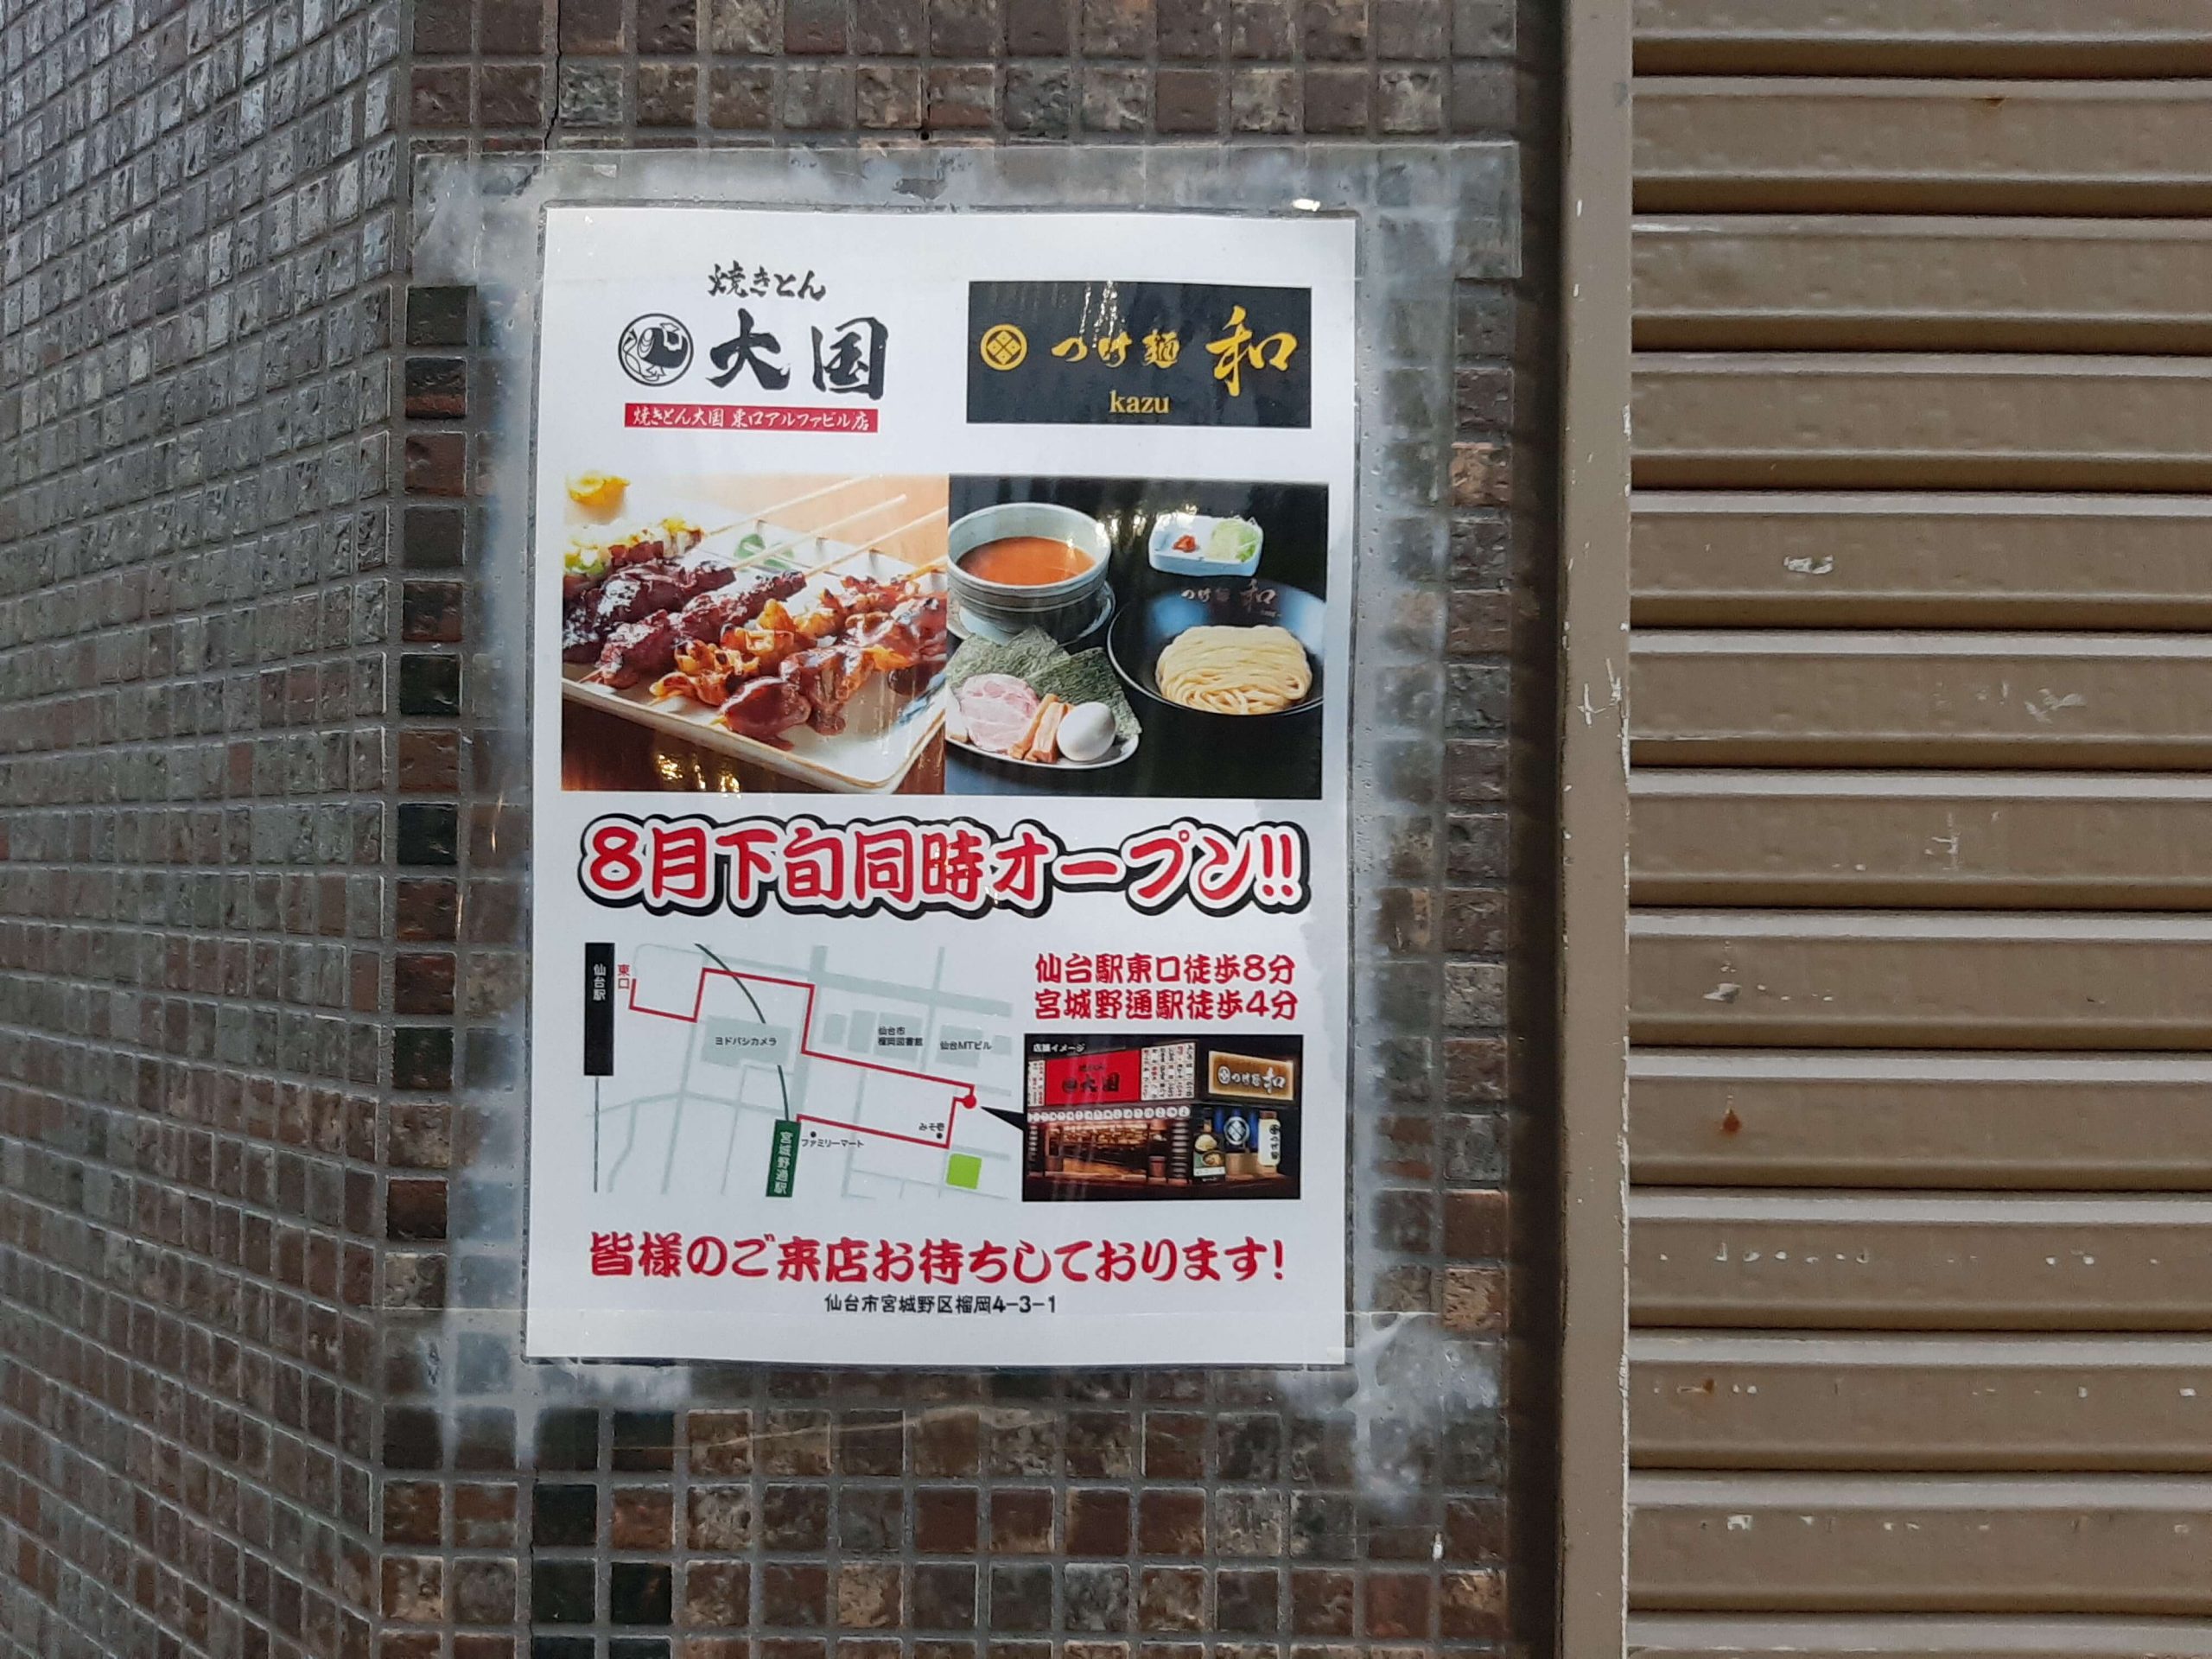 人気店 つけ麺 和 4号店が仙台駅東口の利久跡地に8月下旬開店